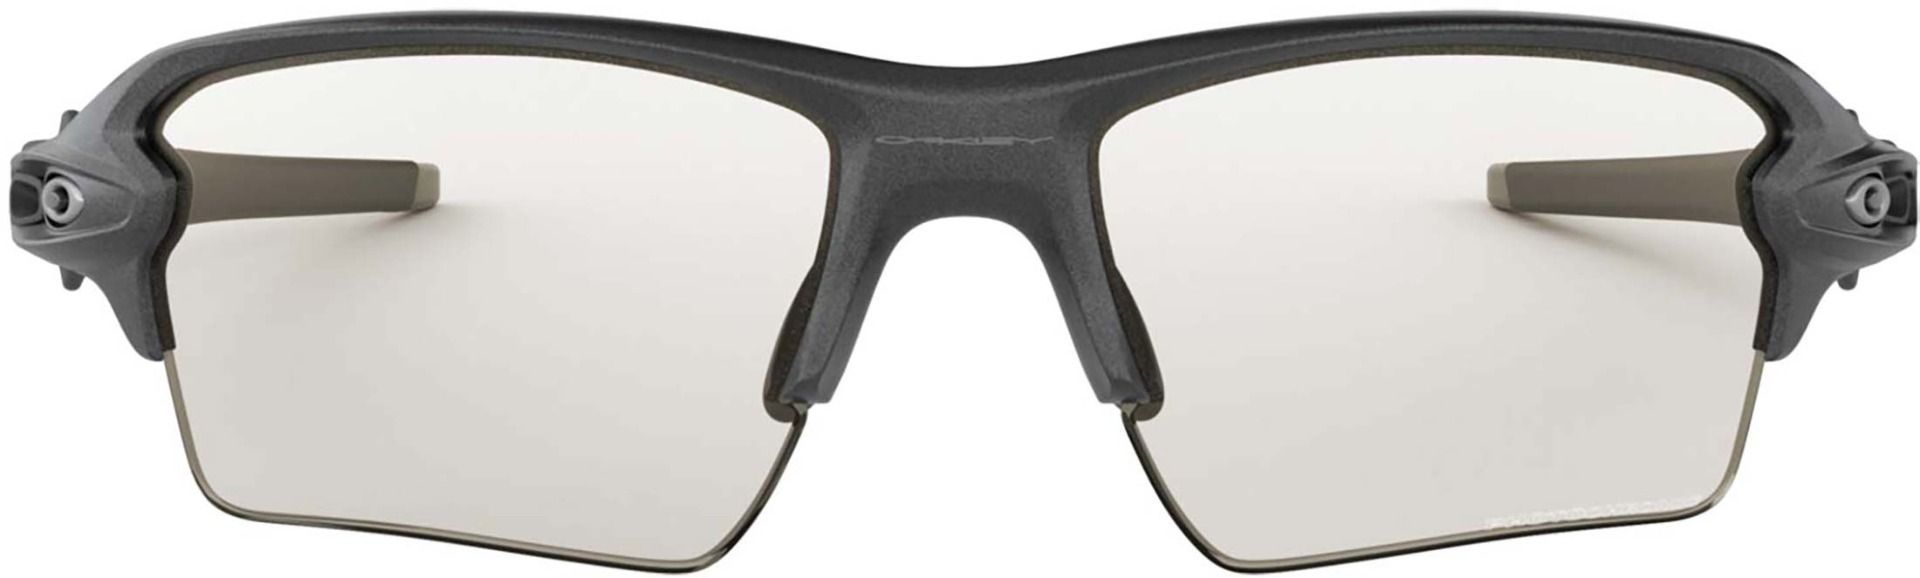 Oakley Flak 2.0 XL Steel Sunglasses w/Photochromic